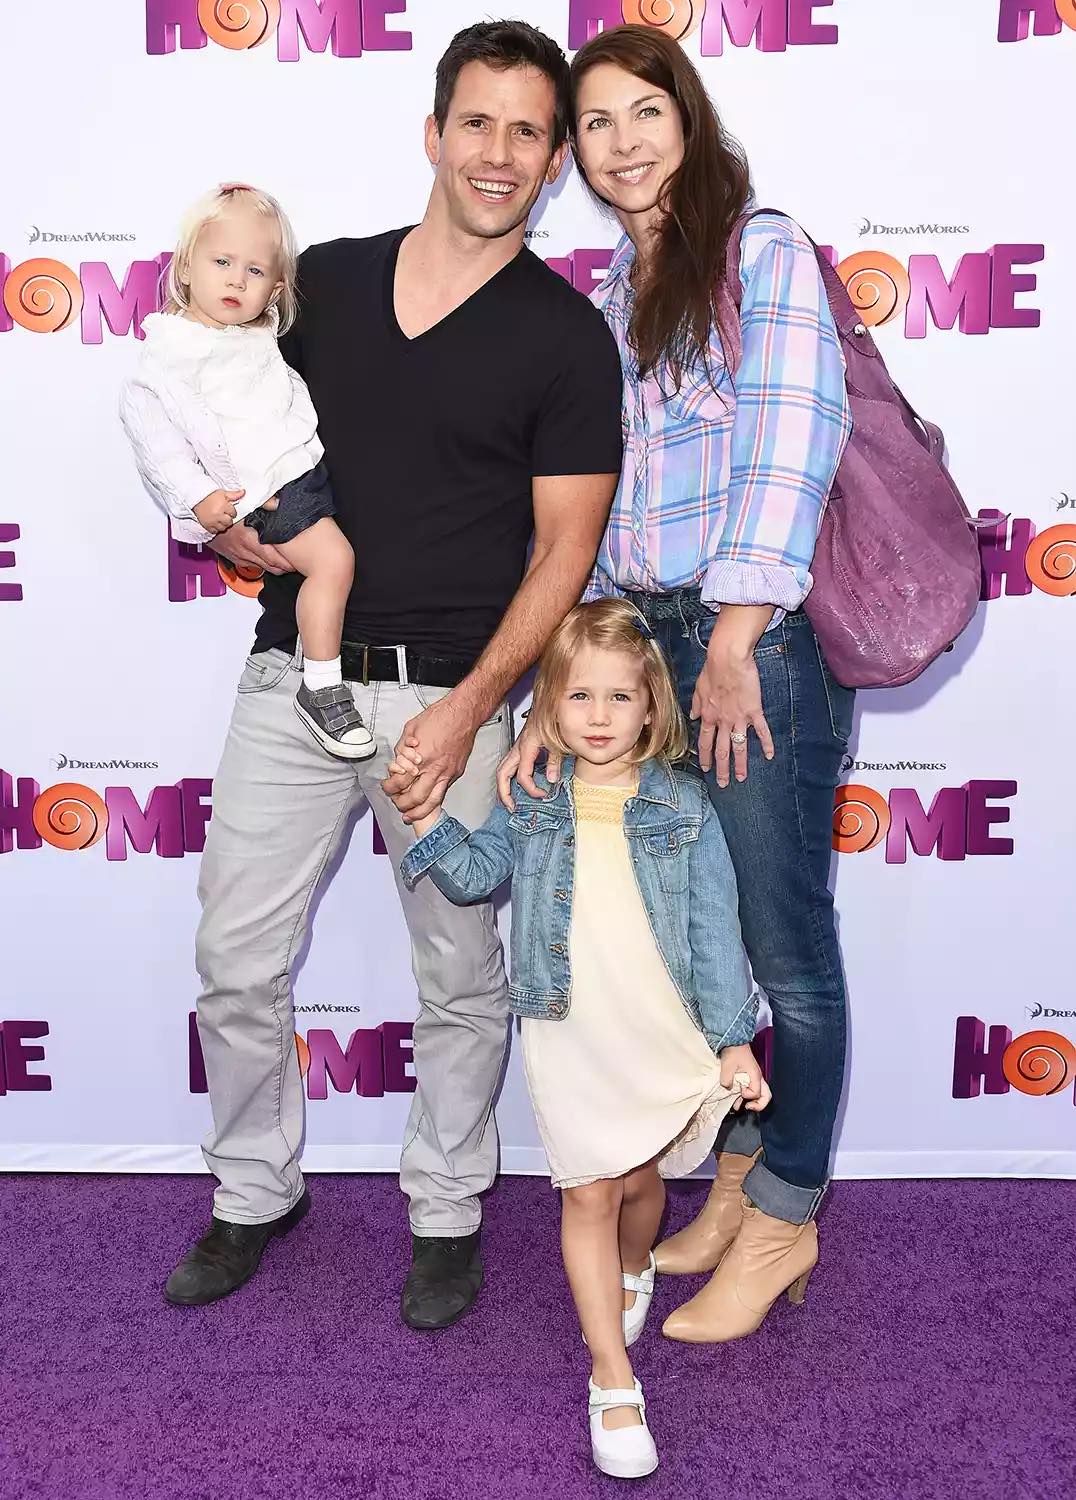 Christian Oliver (trái) cùng vợ, Jessica Mazur (phải), và các con gái tại buổi ra mắt phim Home ở Los Angeles (Mỹ), tháng 3/2015. Ảnh: FilmMagic